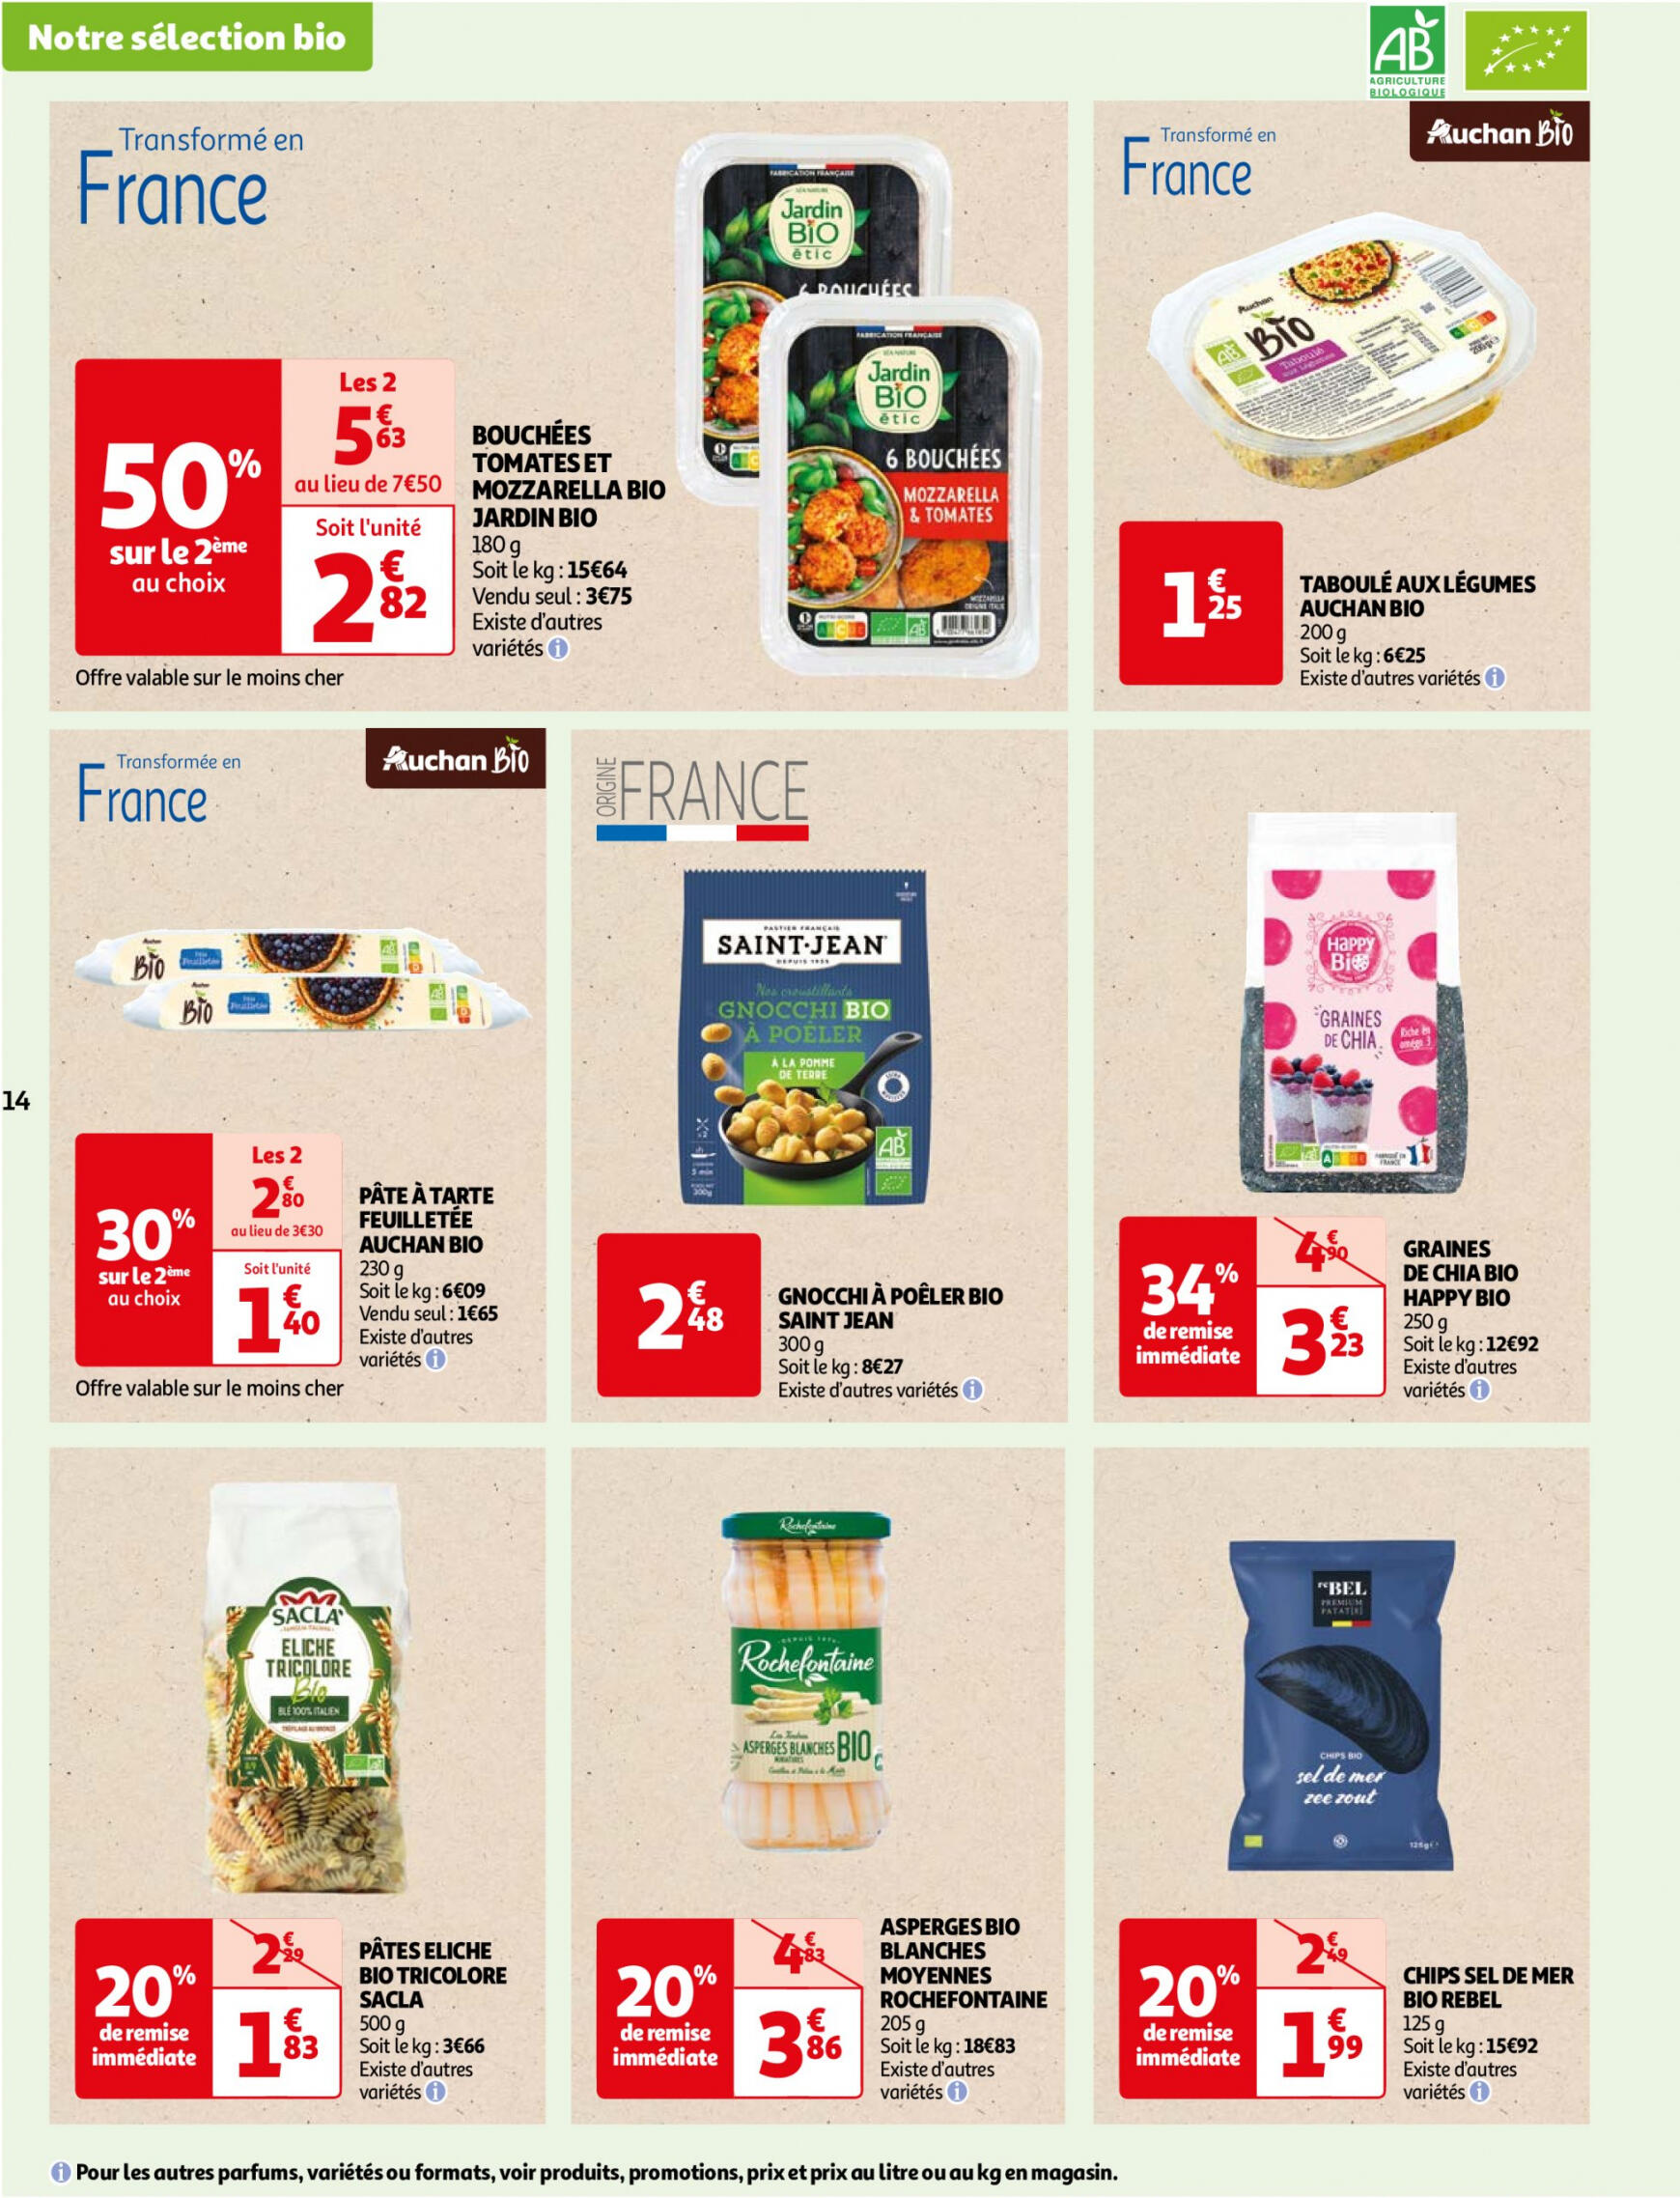 auchan - Auchan - Faites le plein de bio à prix bas folder huidig 22.05. - 03.06. - page: 14